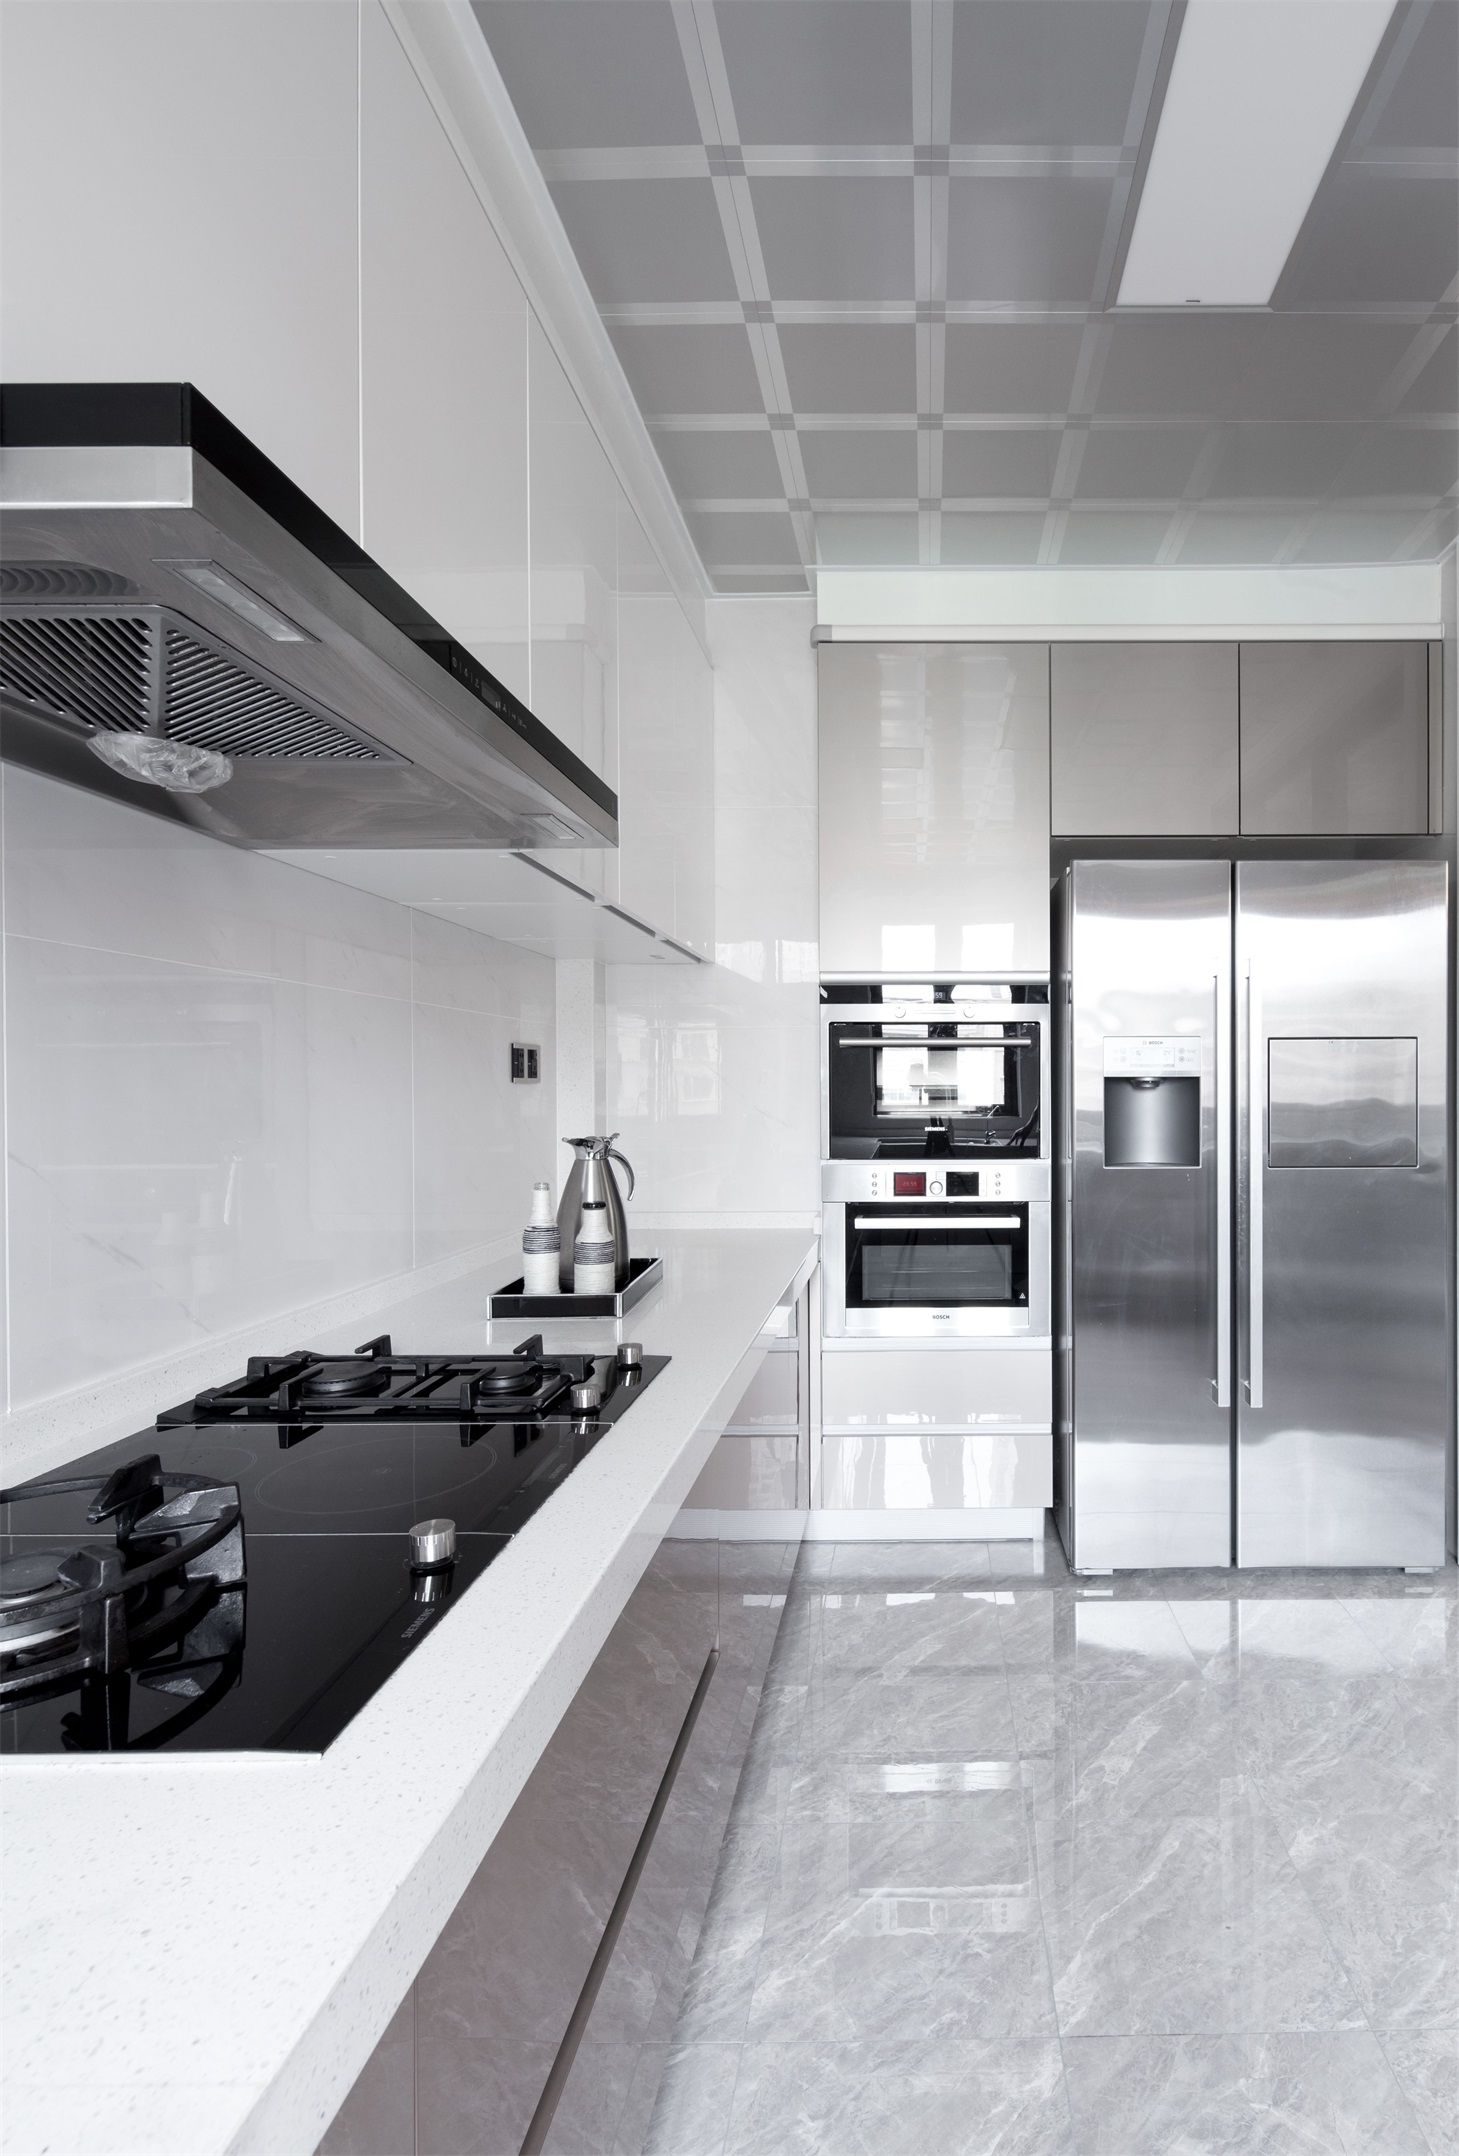 厨房烤漆材质橱柜光泽度较高，提升了空间的精致感，使烹饪环境明亮大气。